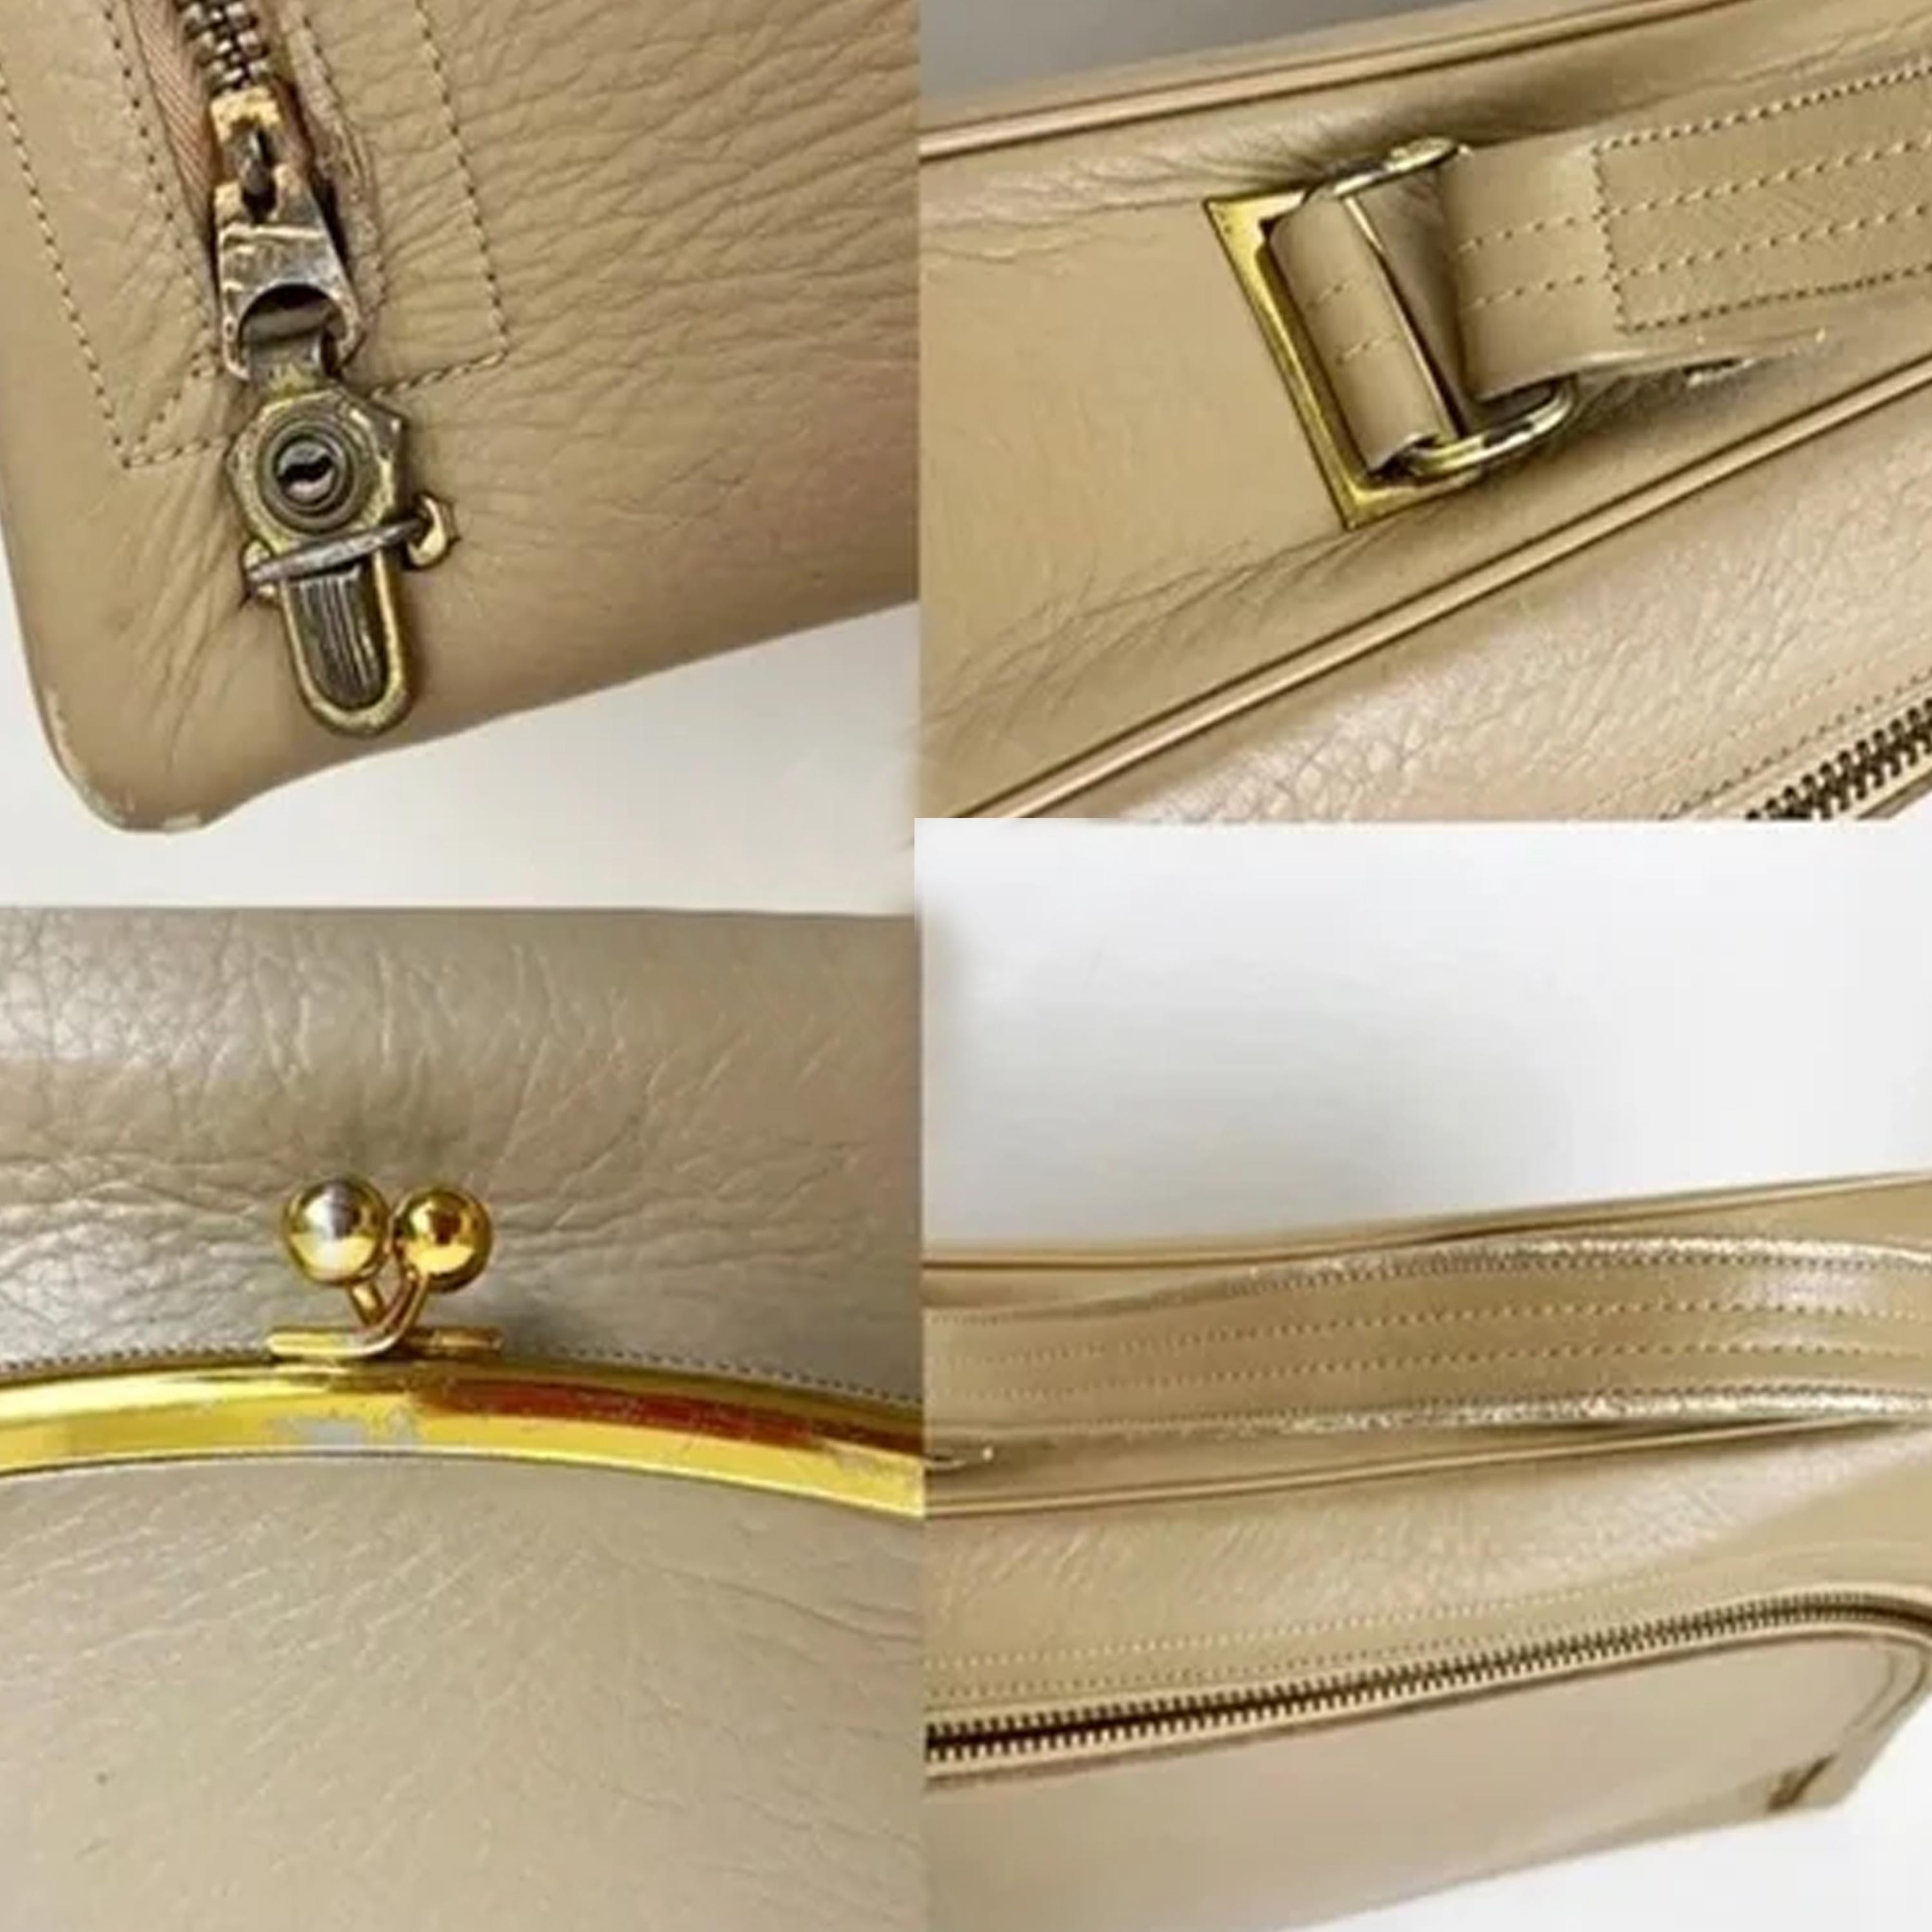 Bonnie Cashin for Coach Attache Bag Cashin Carry Tan Leather Rare Vintage 60s For Sale 7